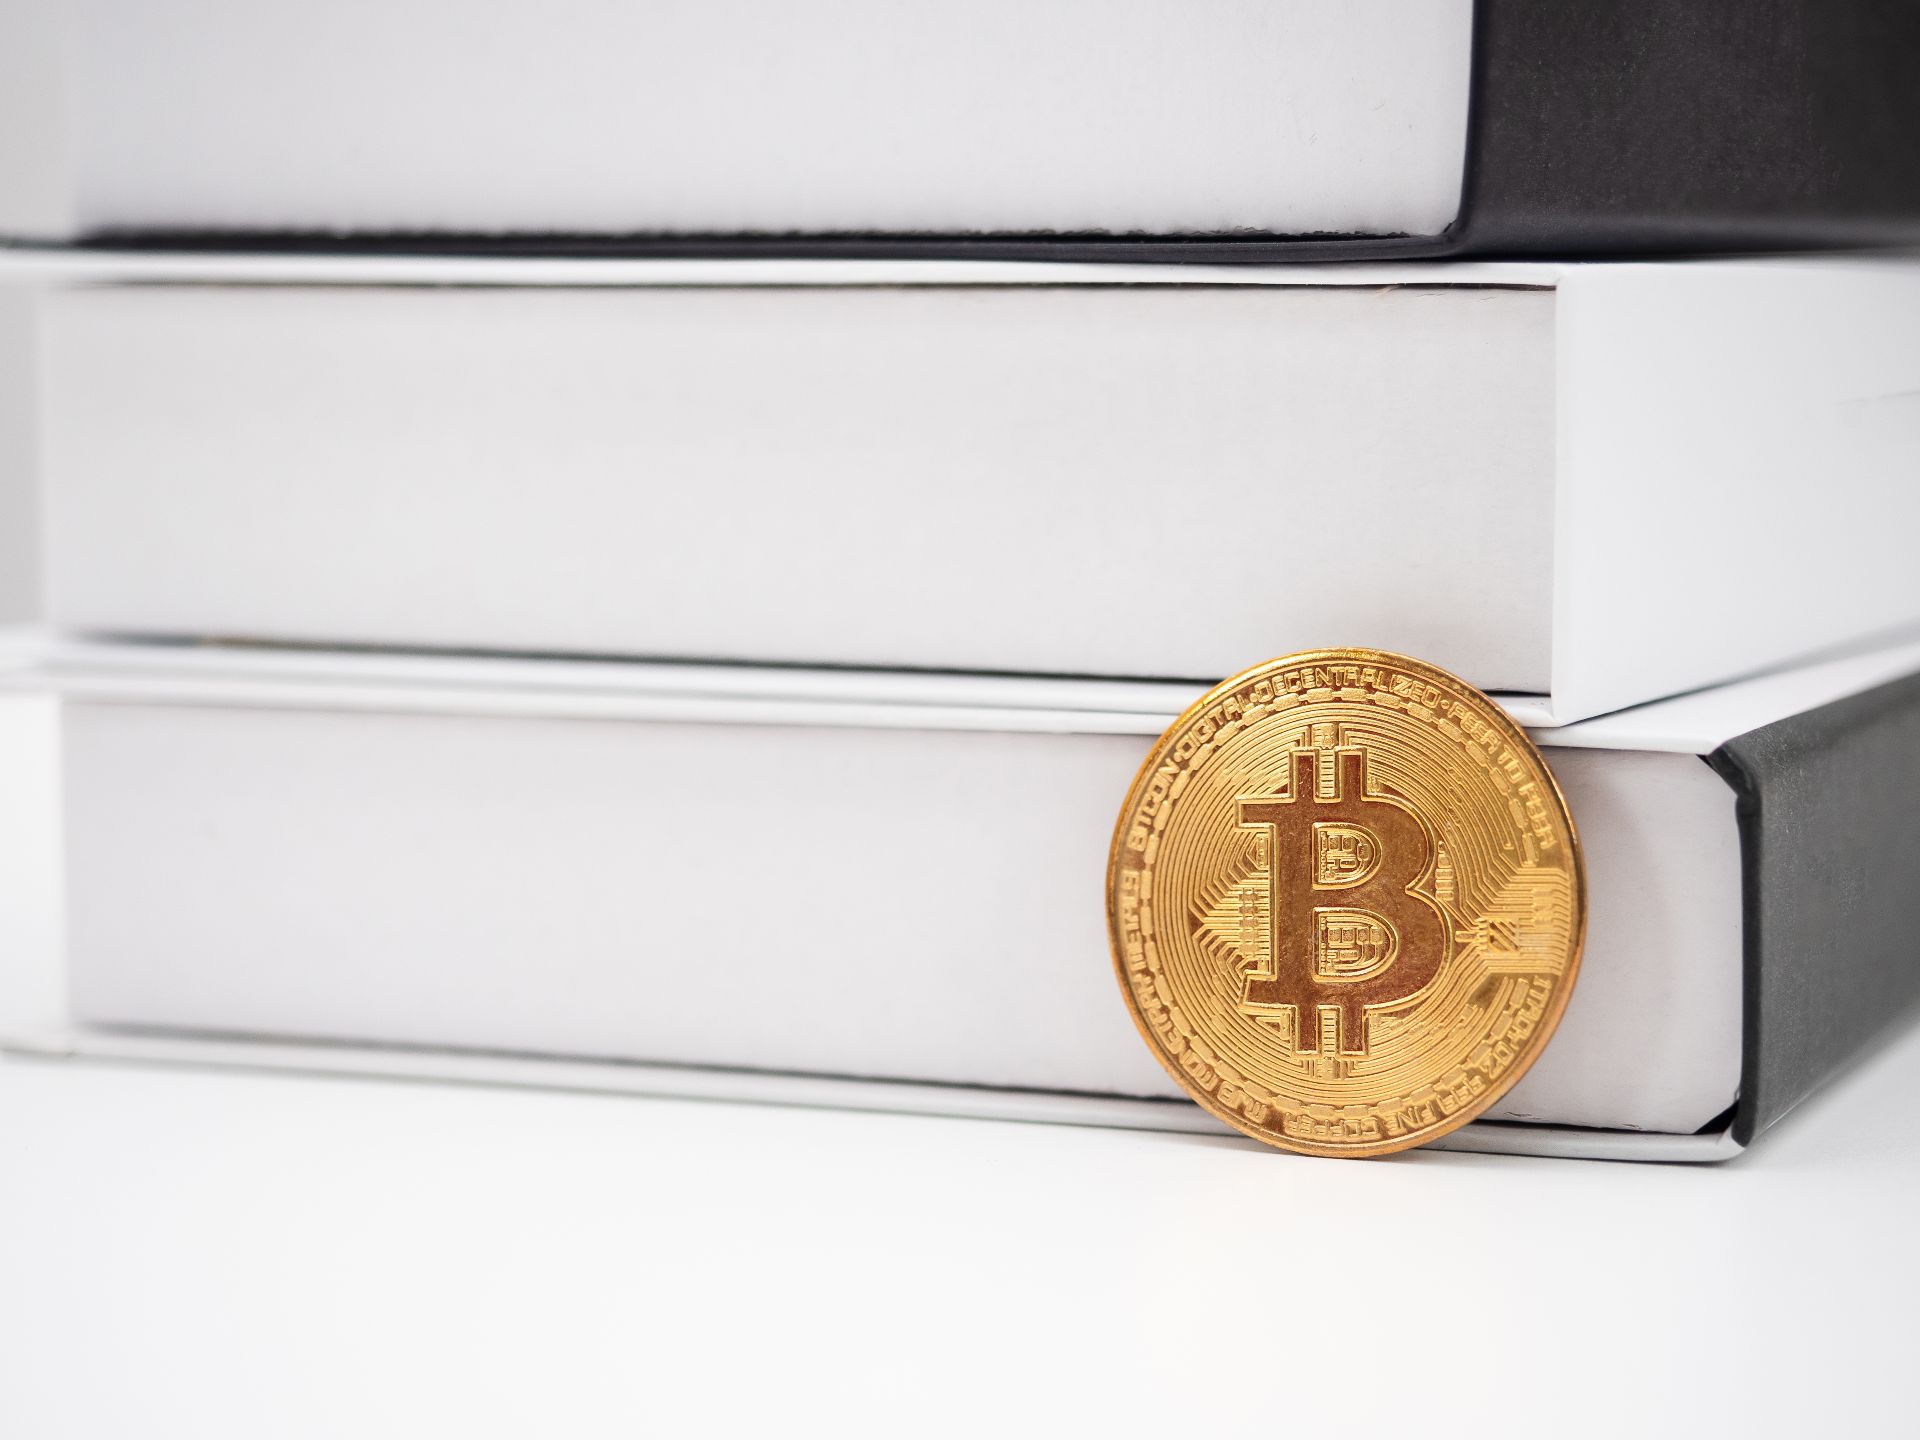 golden-bit-coin-book-table-digital-money-crypto